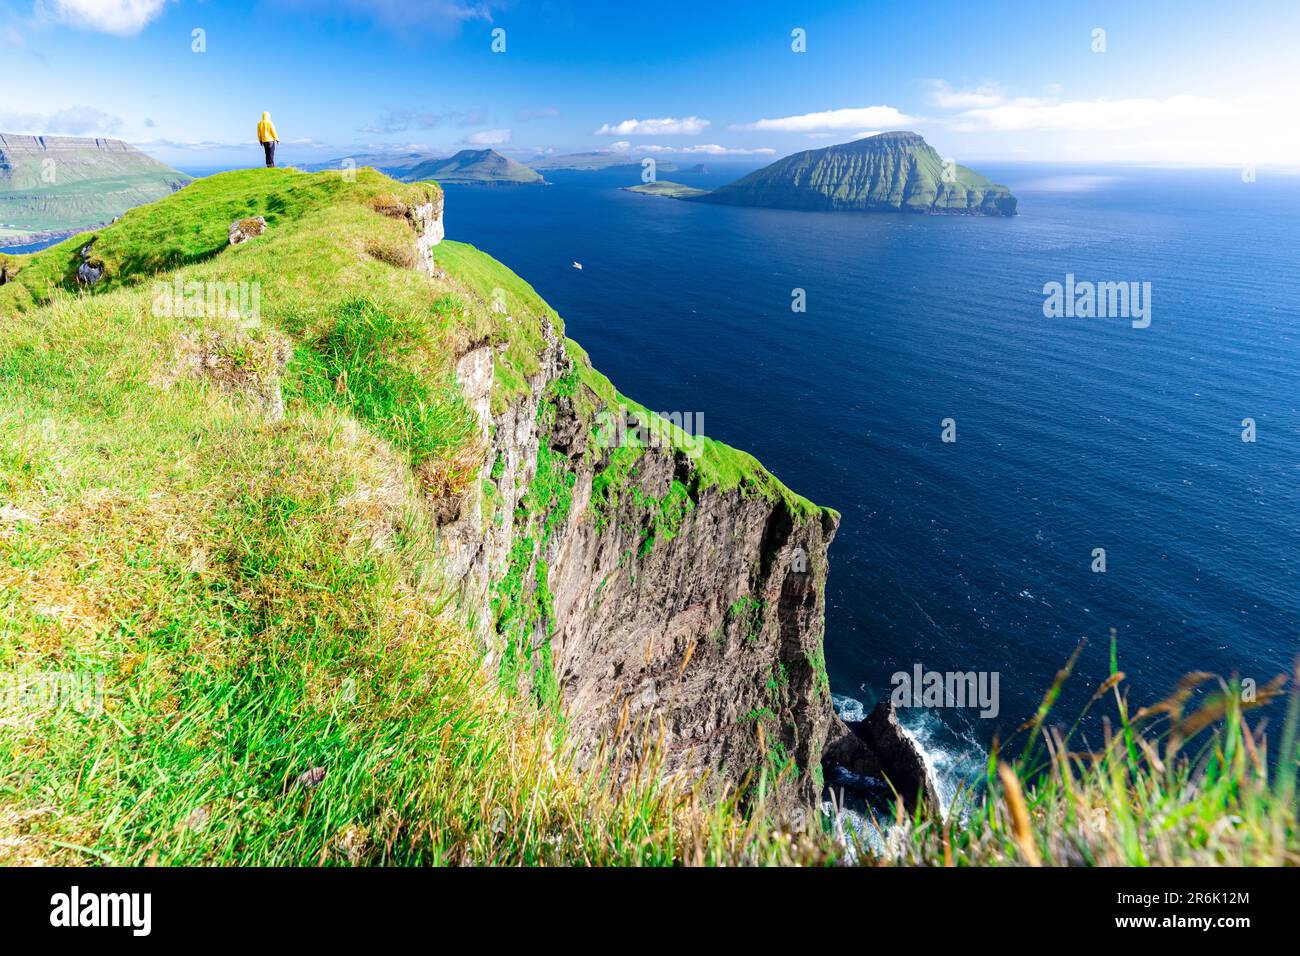 Una persona che ammira la vista che si erge sulle scogliere sopra l'oceano, Nordradalur, Streymoy Island, Faroe Islands, Denmark, Europa Foto Stock